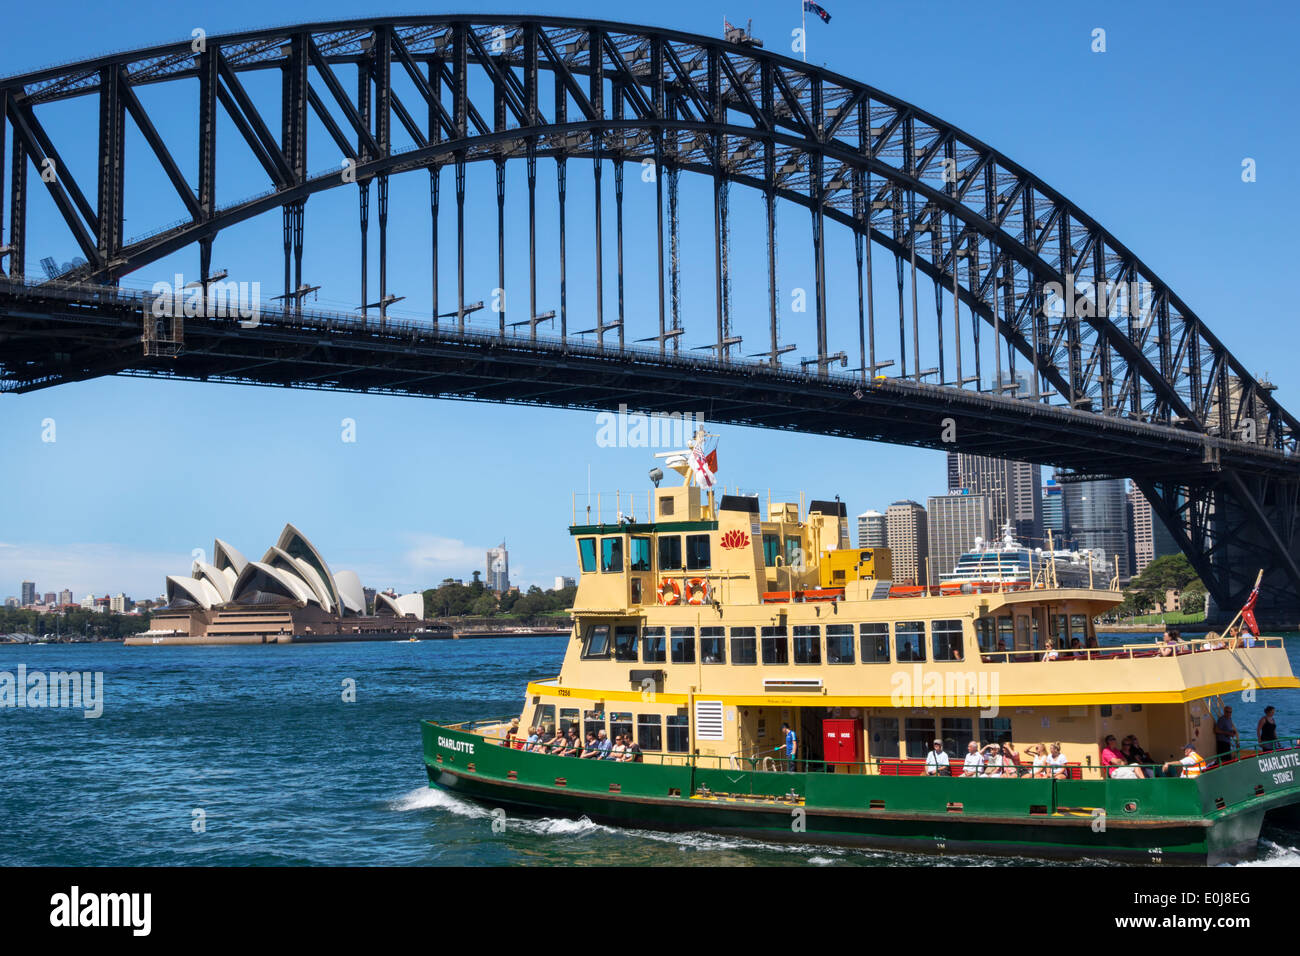 Sydney Australien, Harbour Bridge, Hafen, Oper, Sydney Fähren, Fähre, Boot, AU140310077 Stockfoto